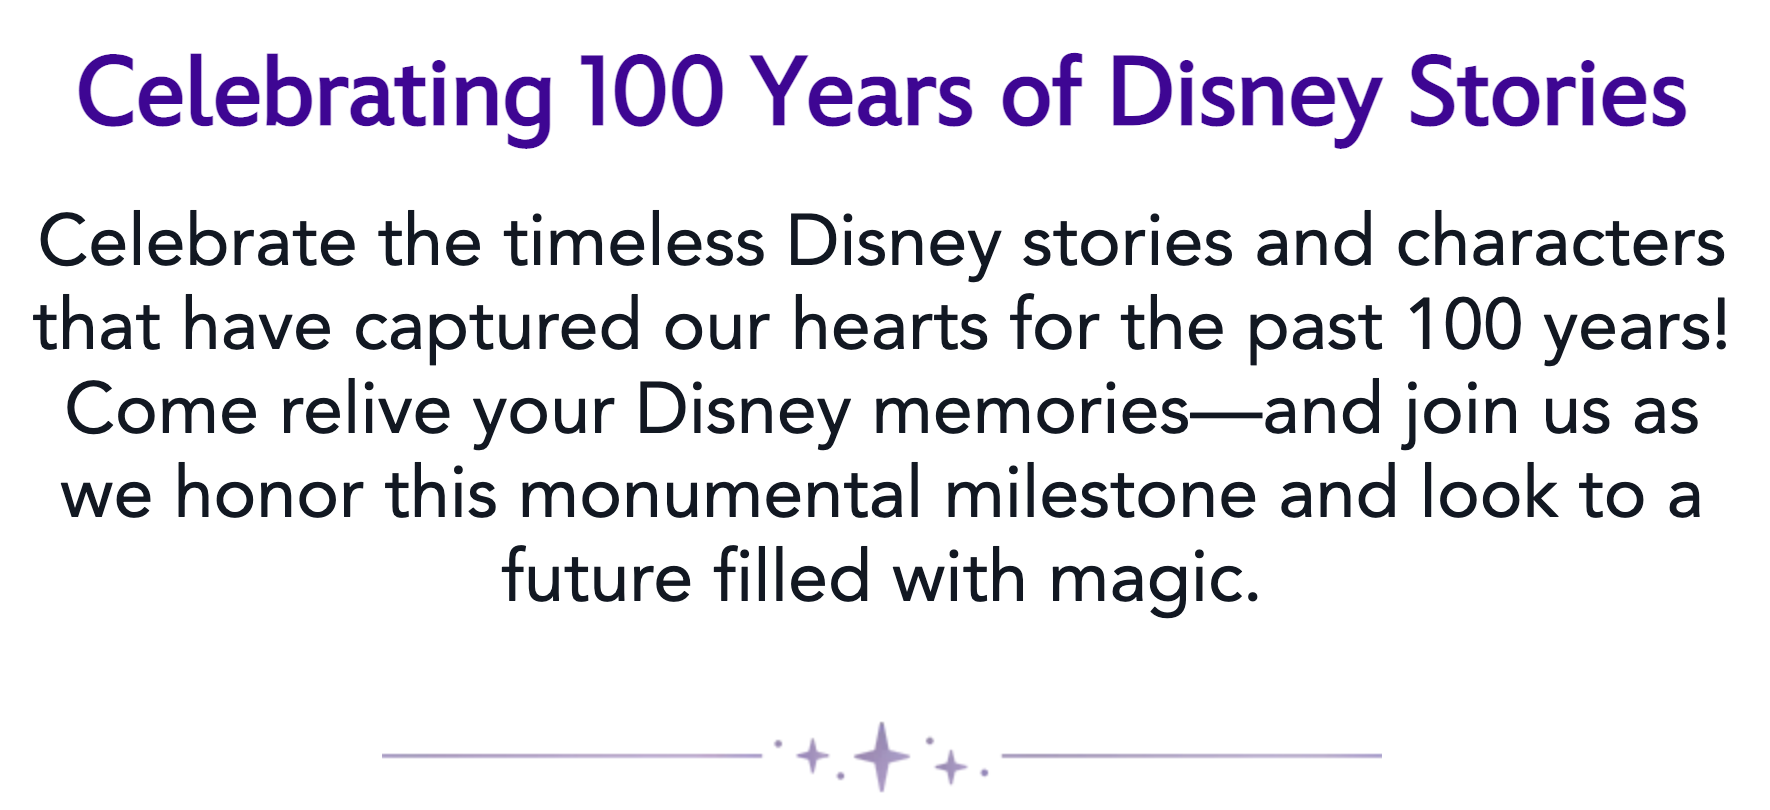 Disney100 website